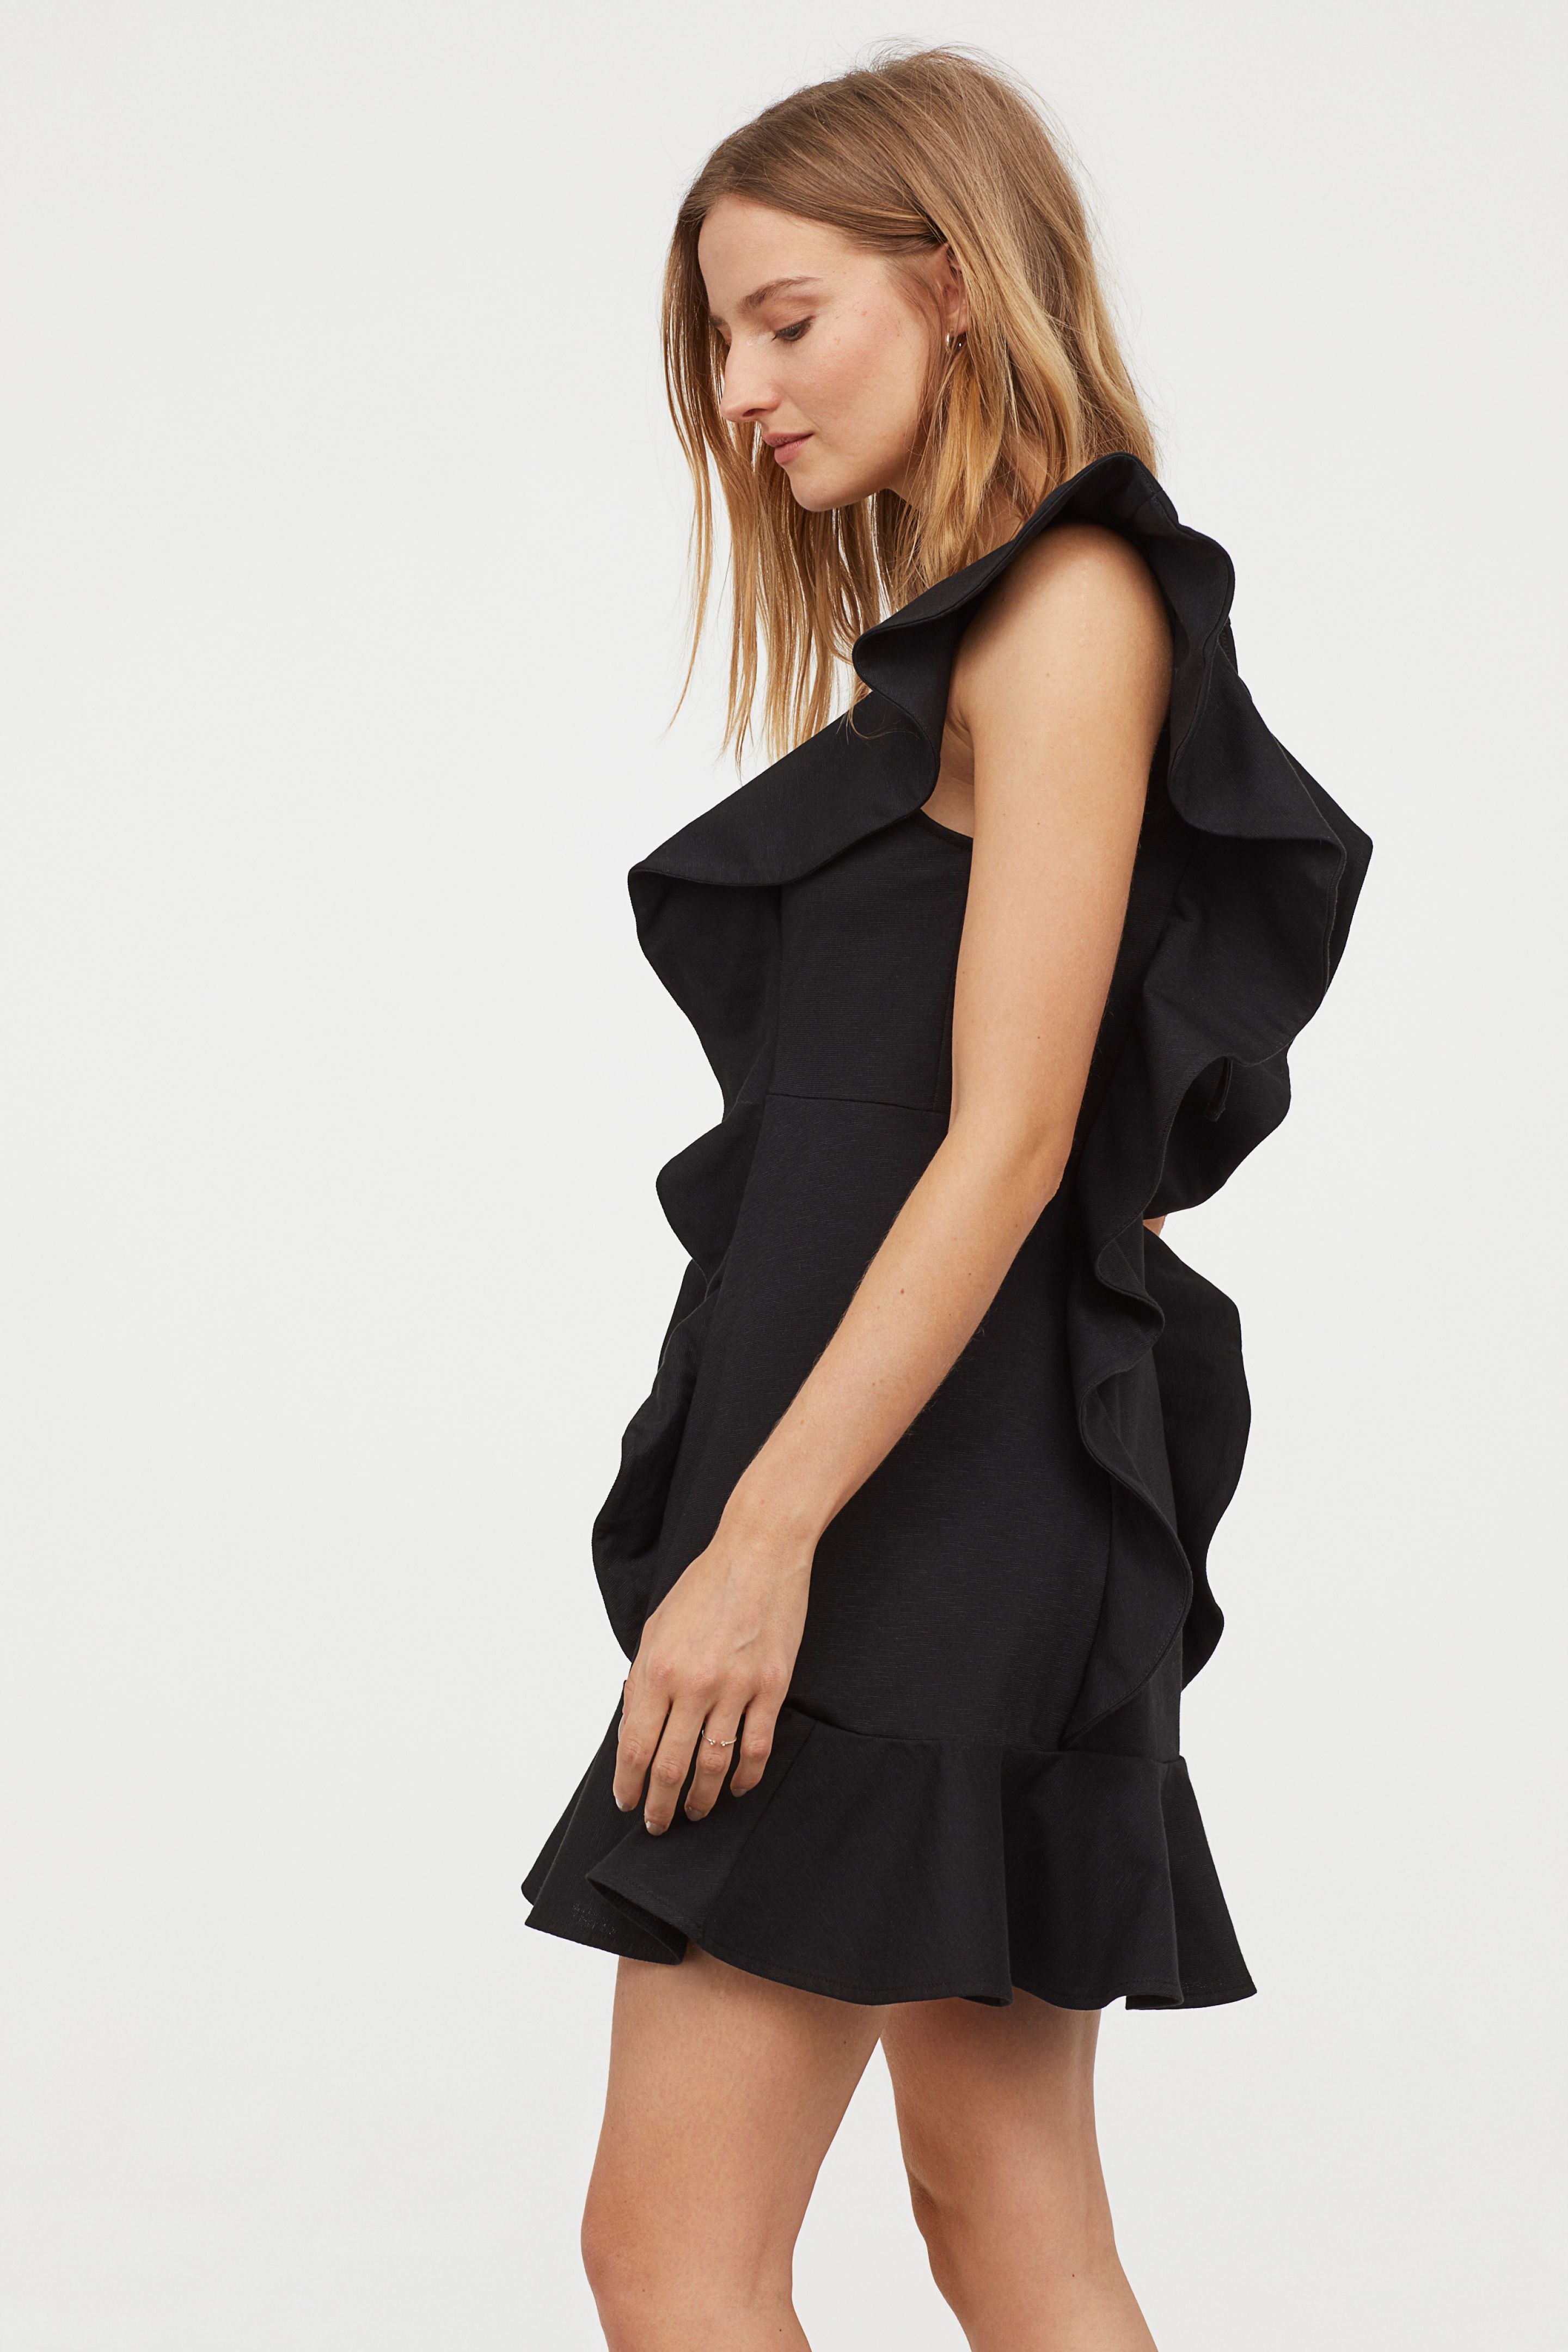 Hay un vestido fiesta corto negro en H&M que se ha agotado